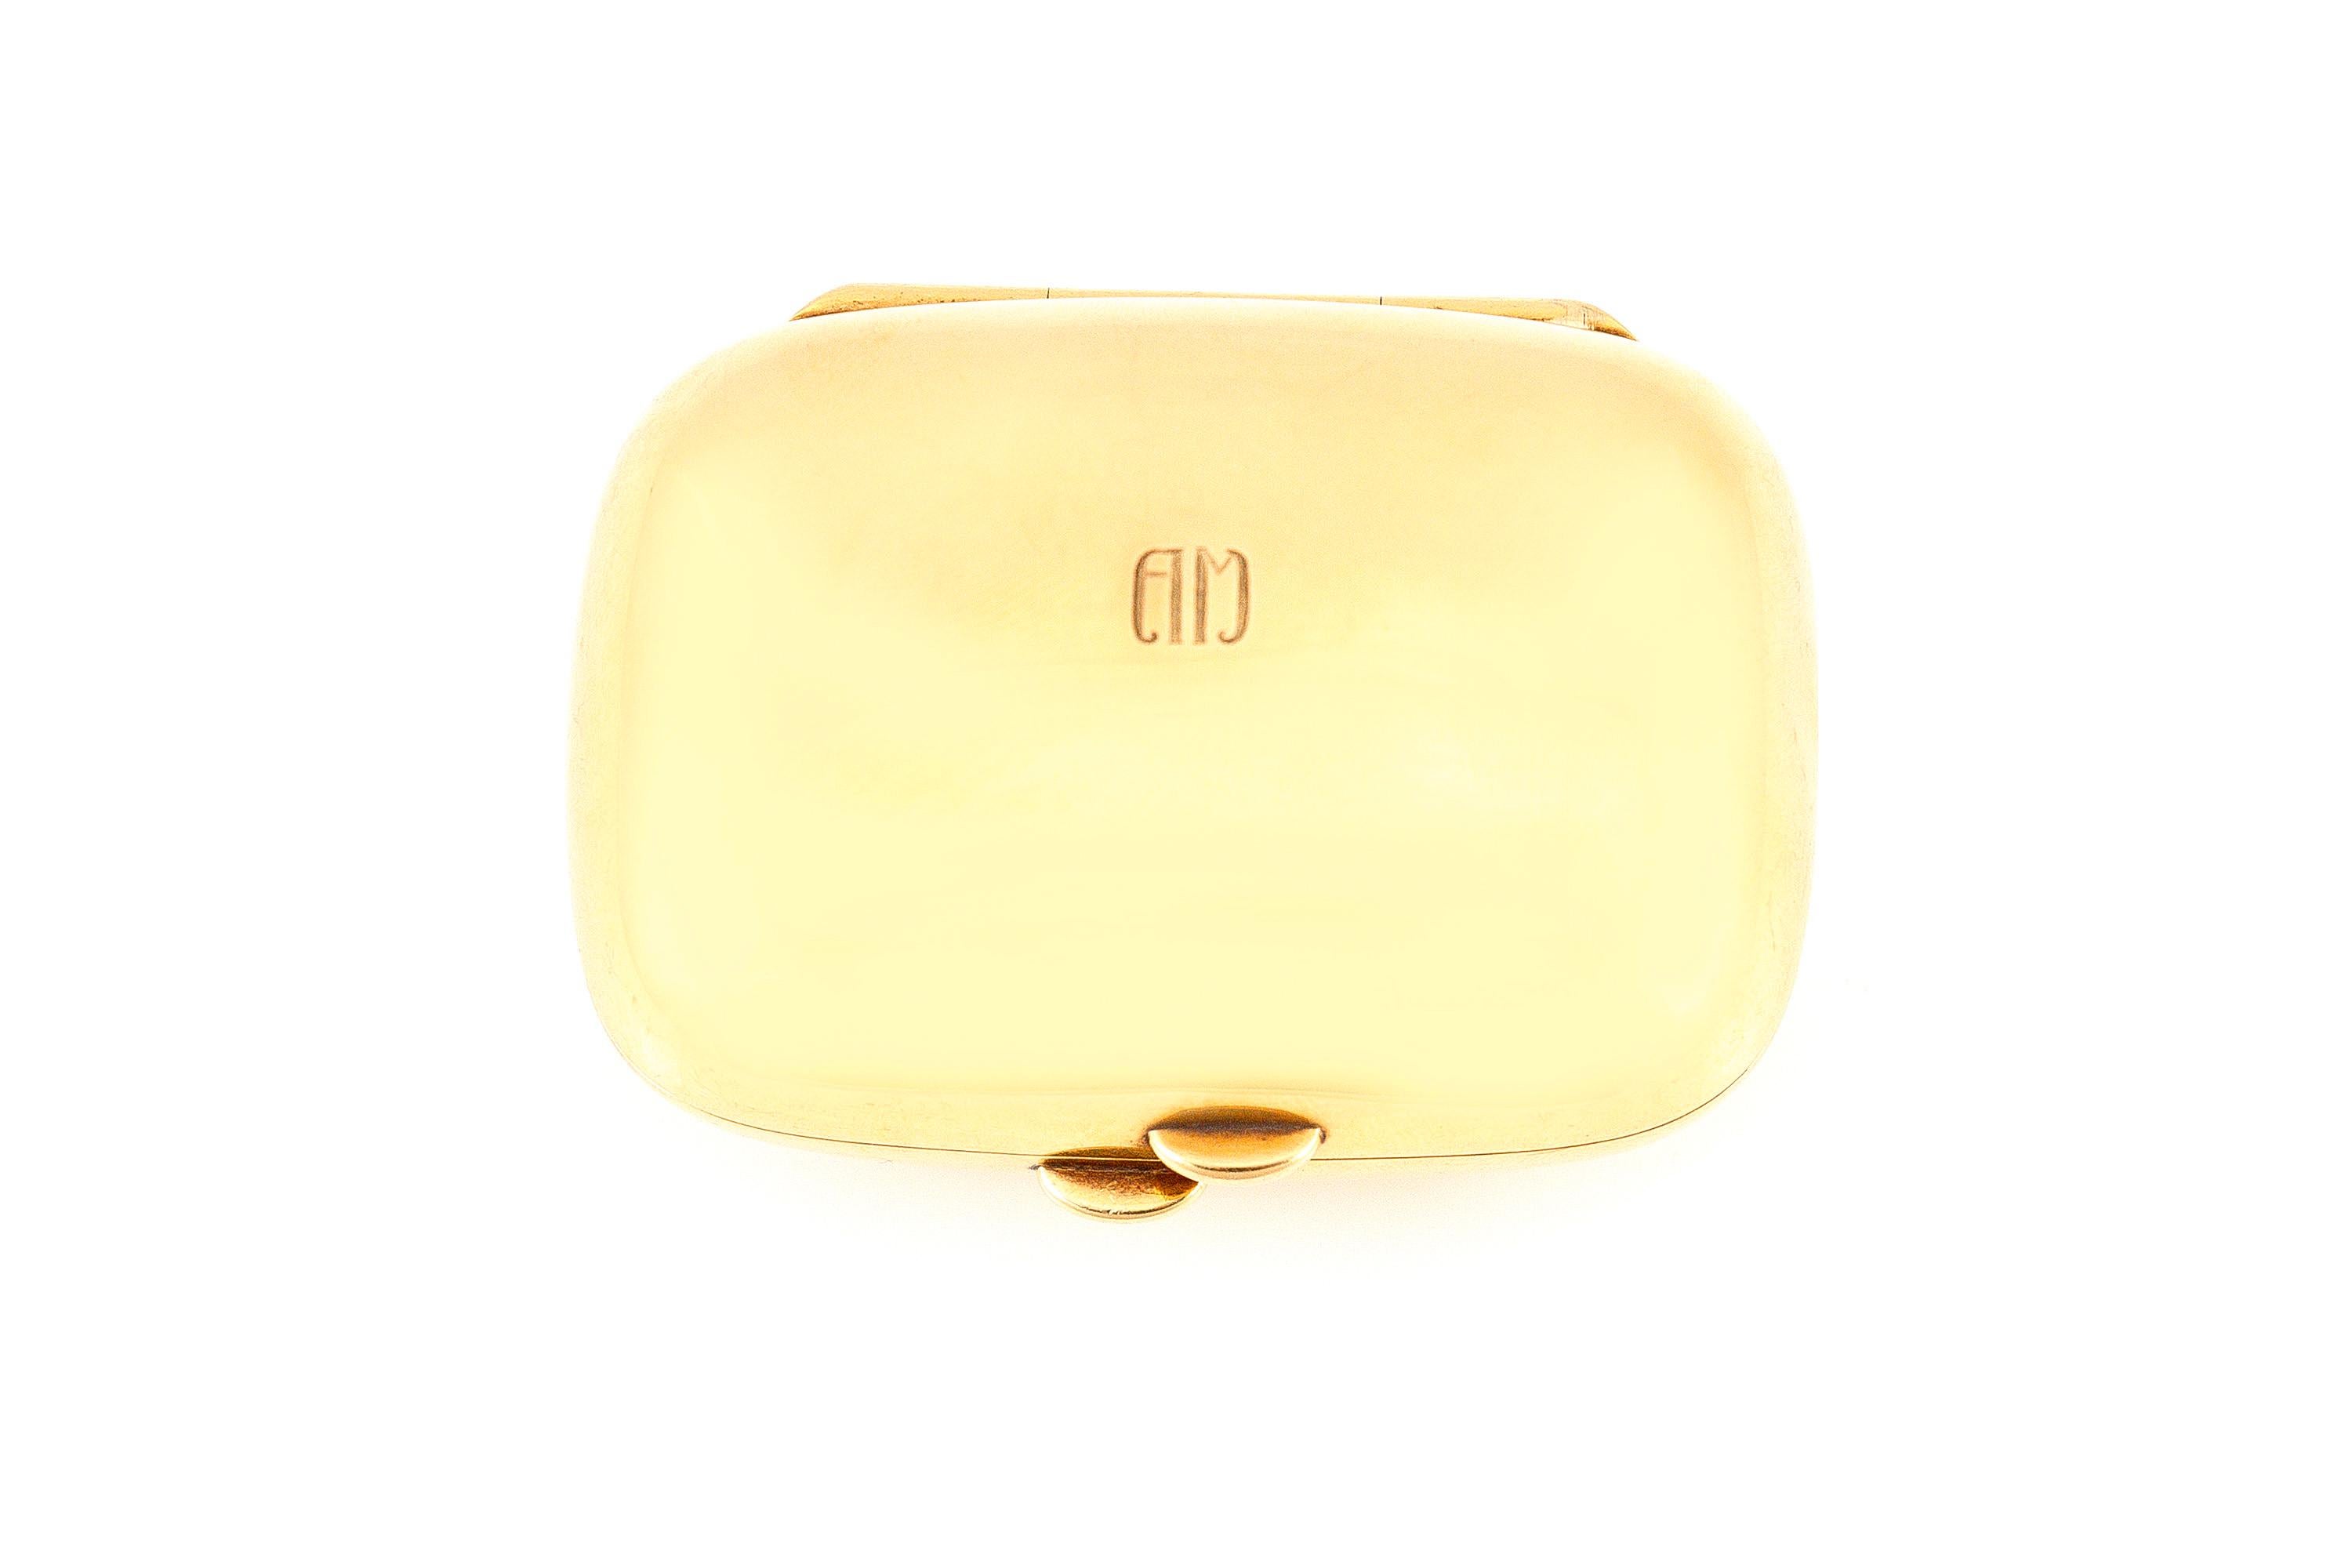 Die Box ist fein in 18k Gelbgold gefertigt und wiegt etwa insgesamt 47,3 dwt.

Schild von Tiffany & Co